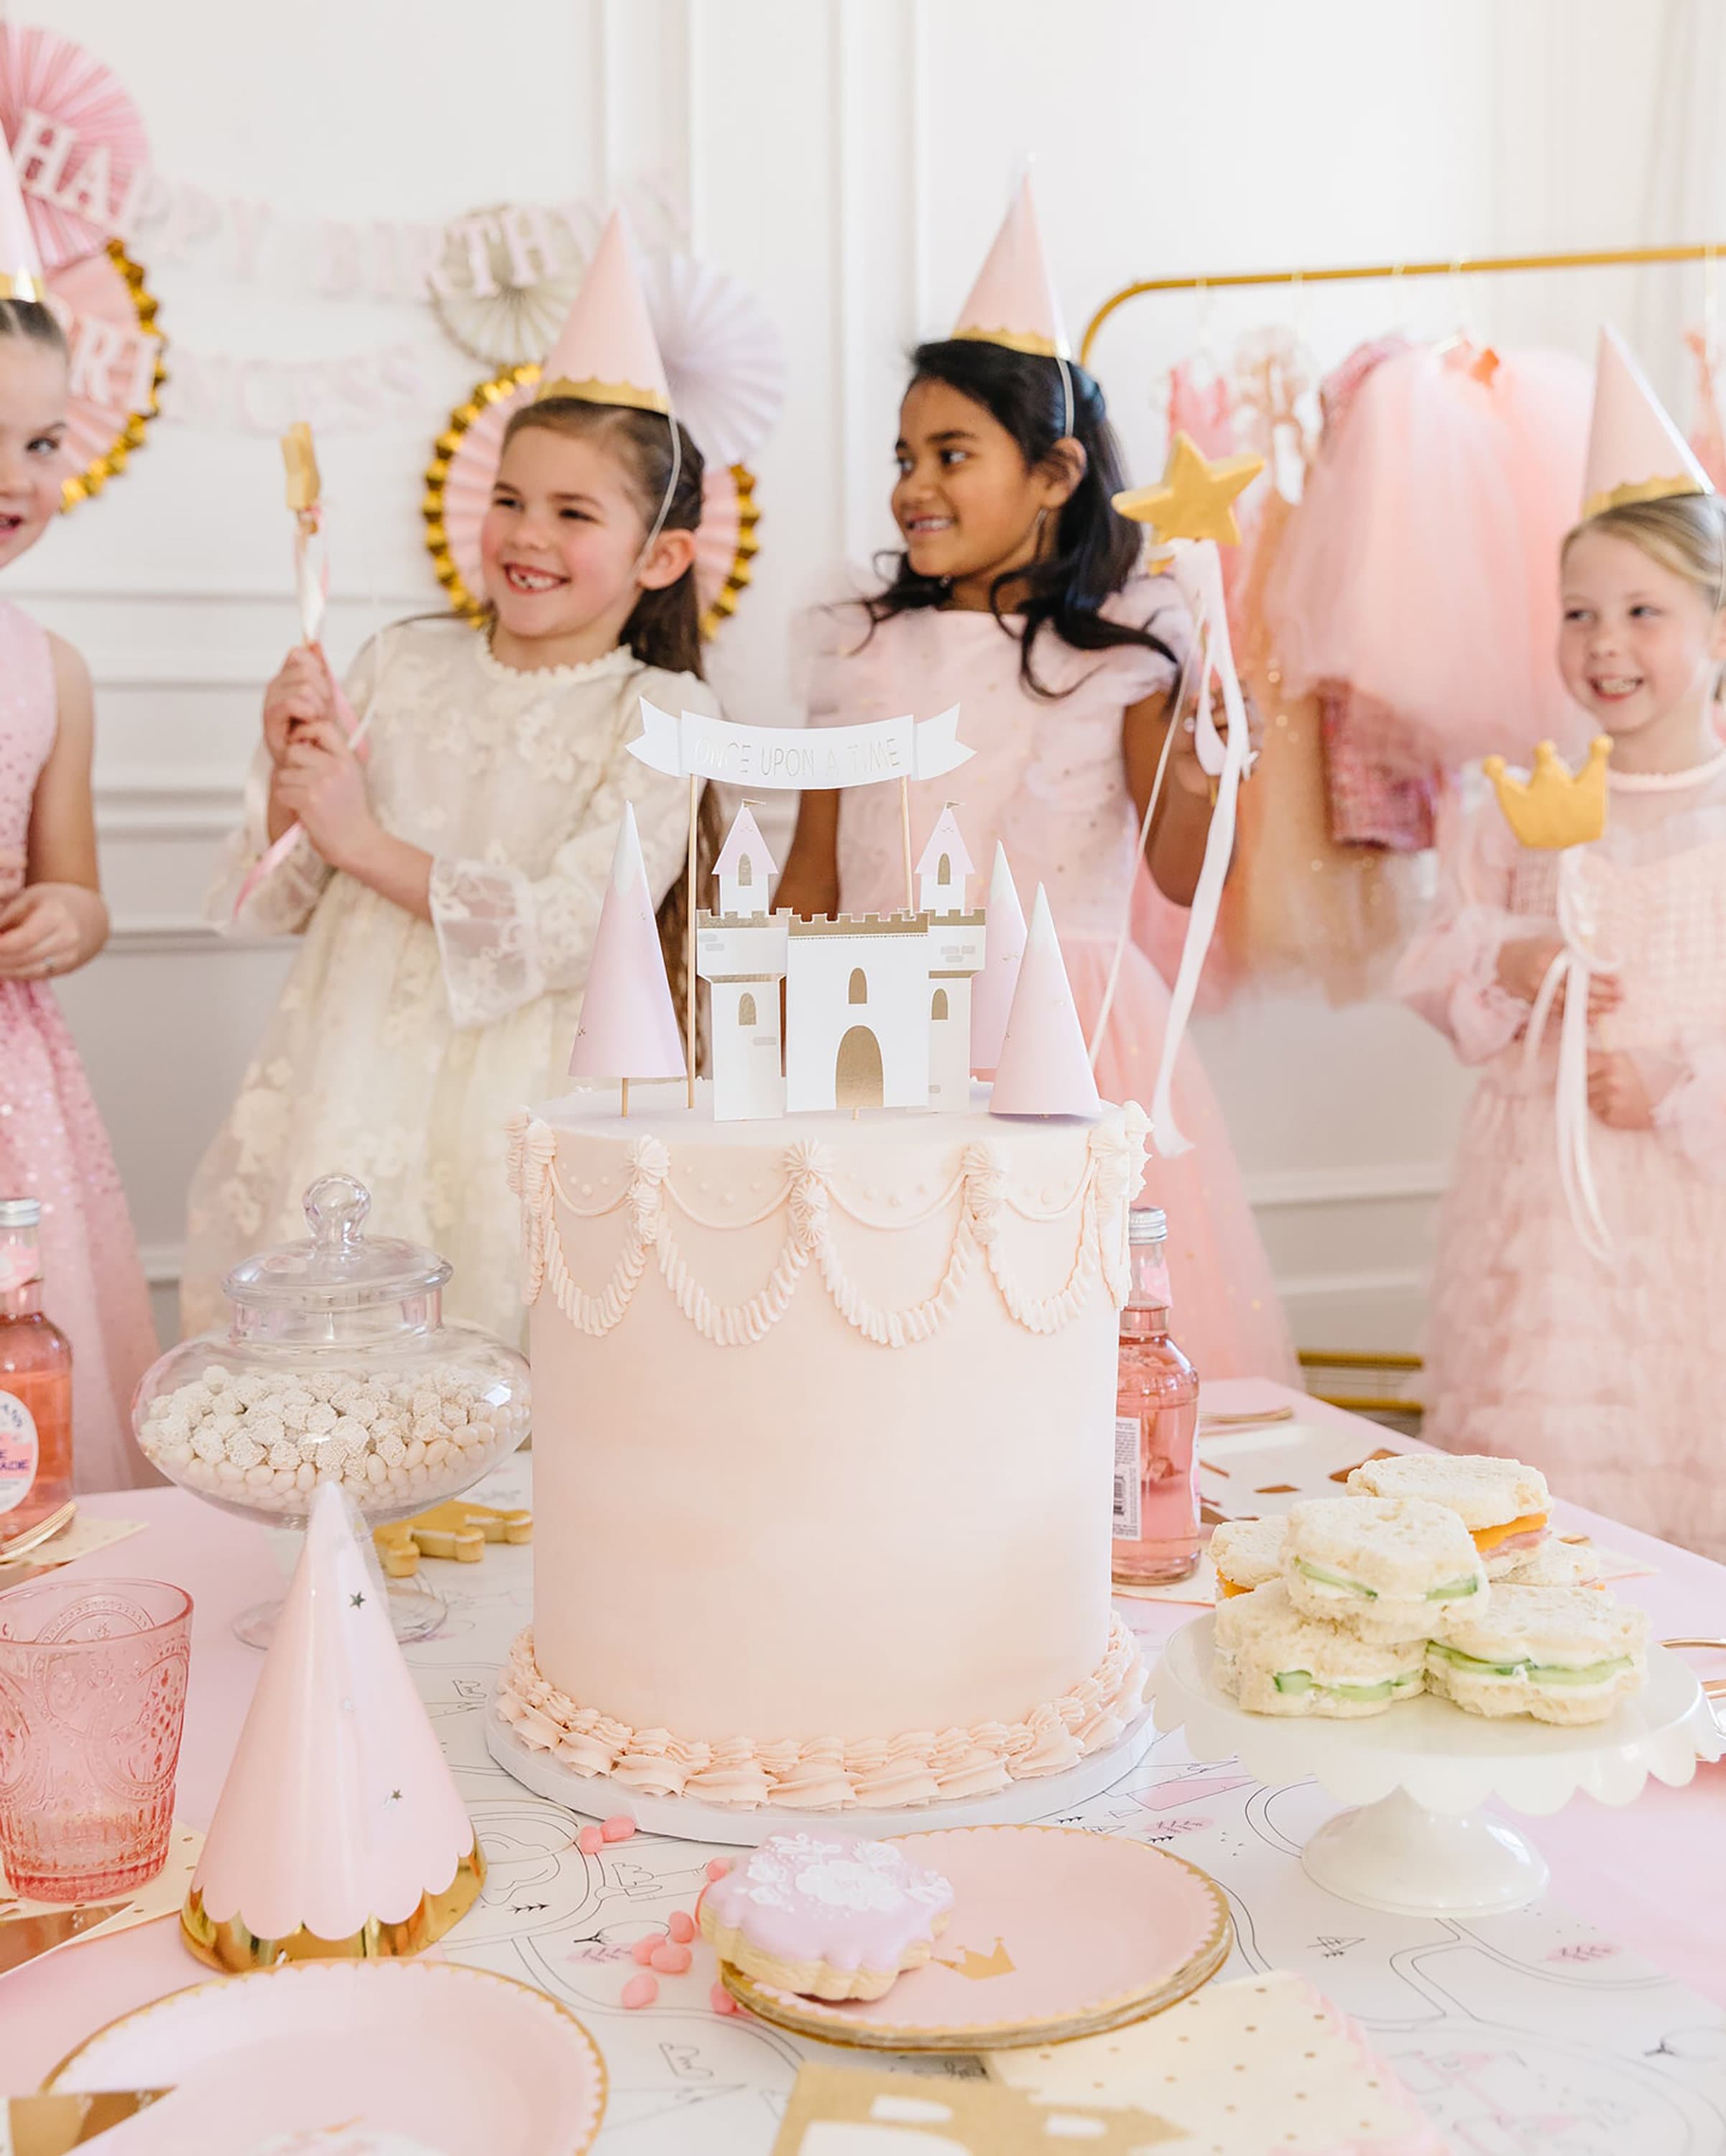 Castle Balloon | Princess Balloon - Princess Theme Party Decorations - Princess Decorations - Princess Tea Party - Castle Birthday Party